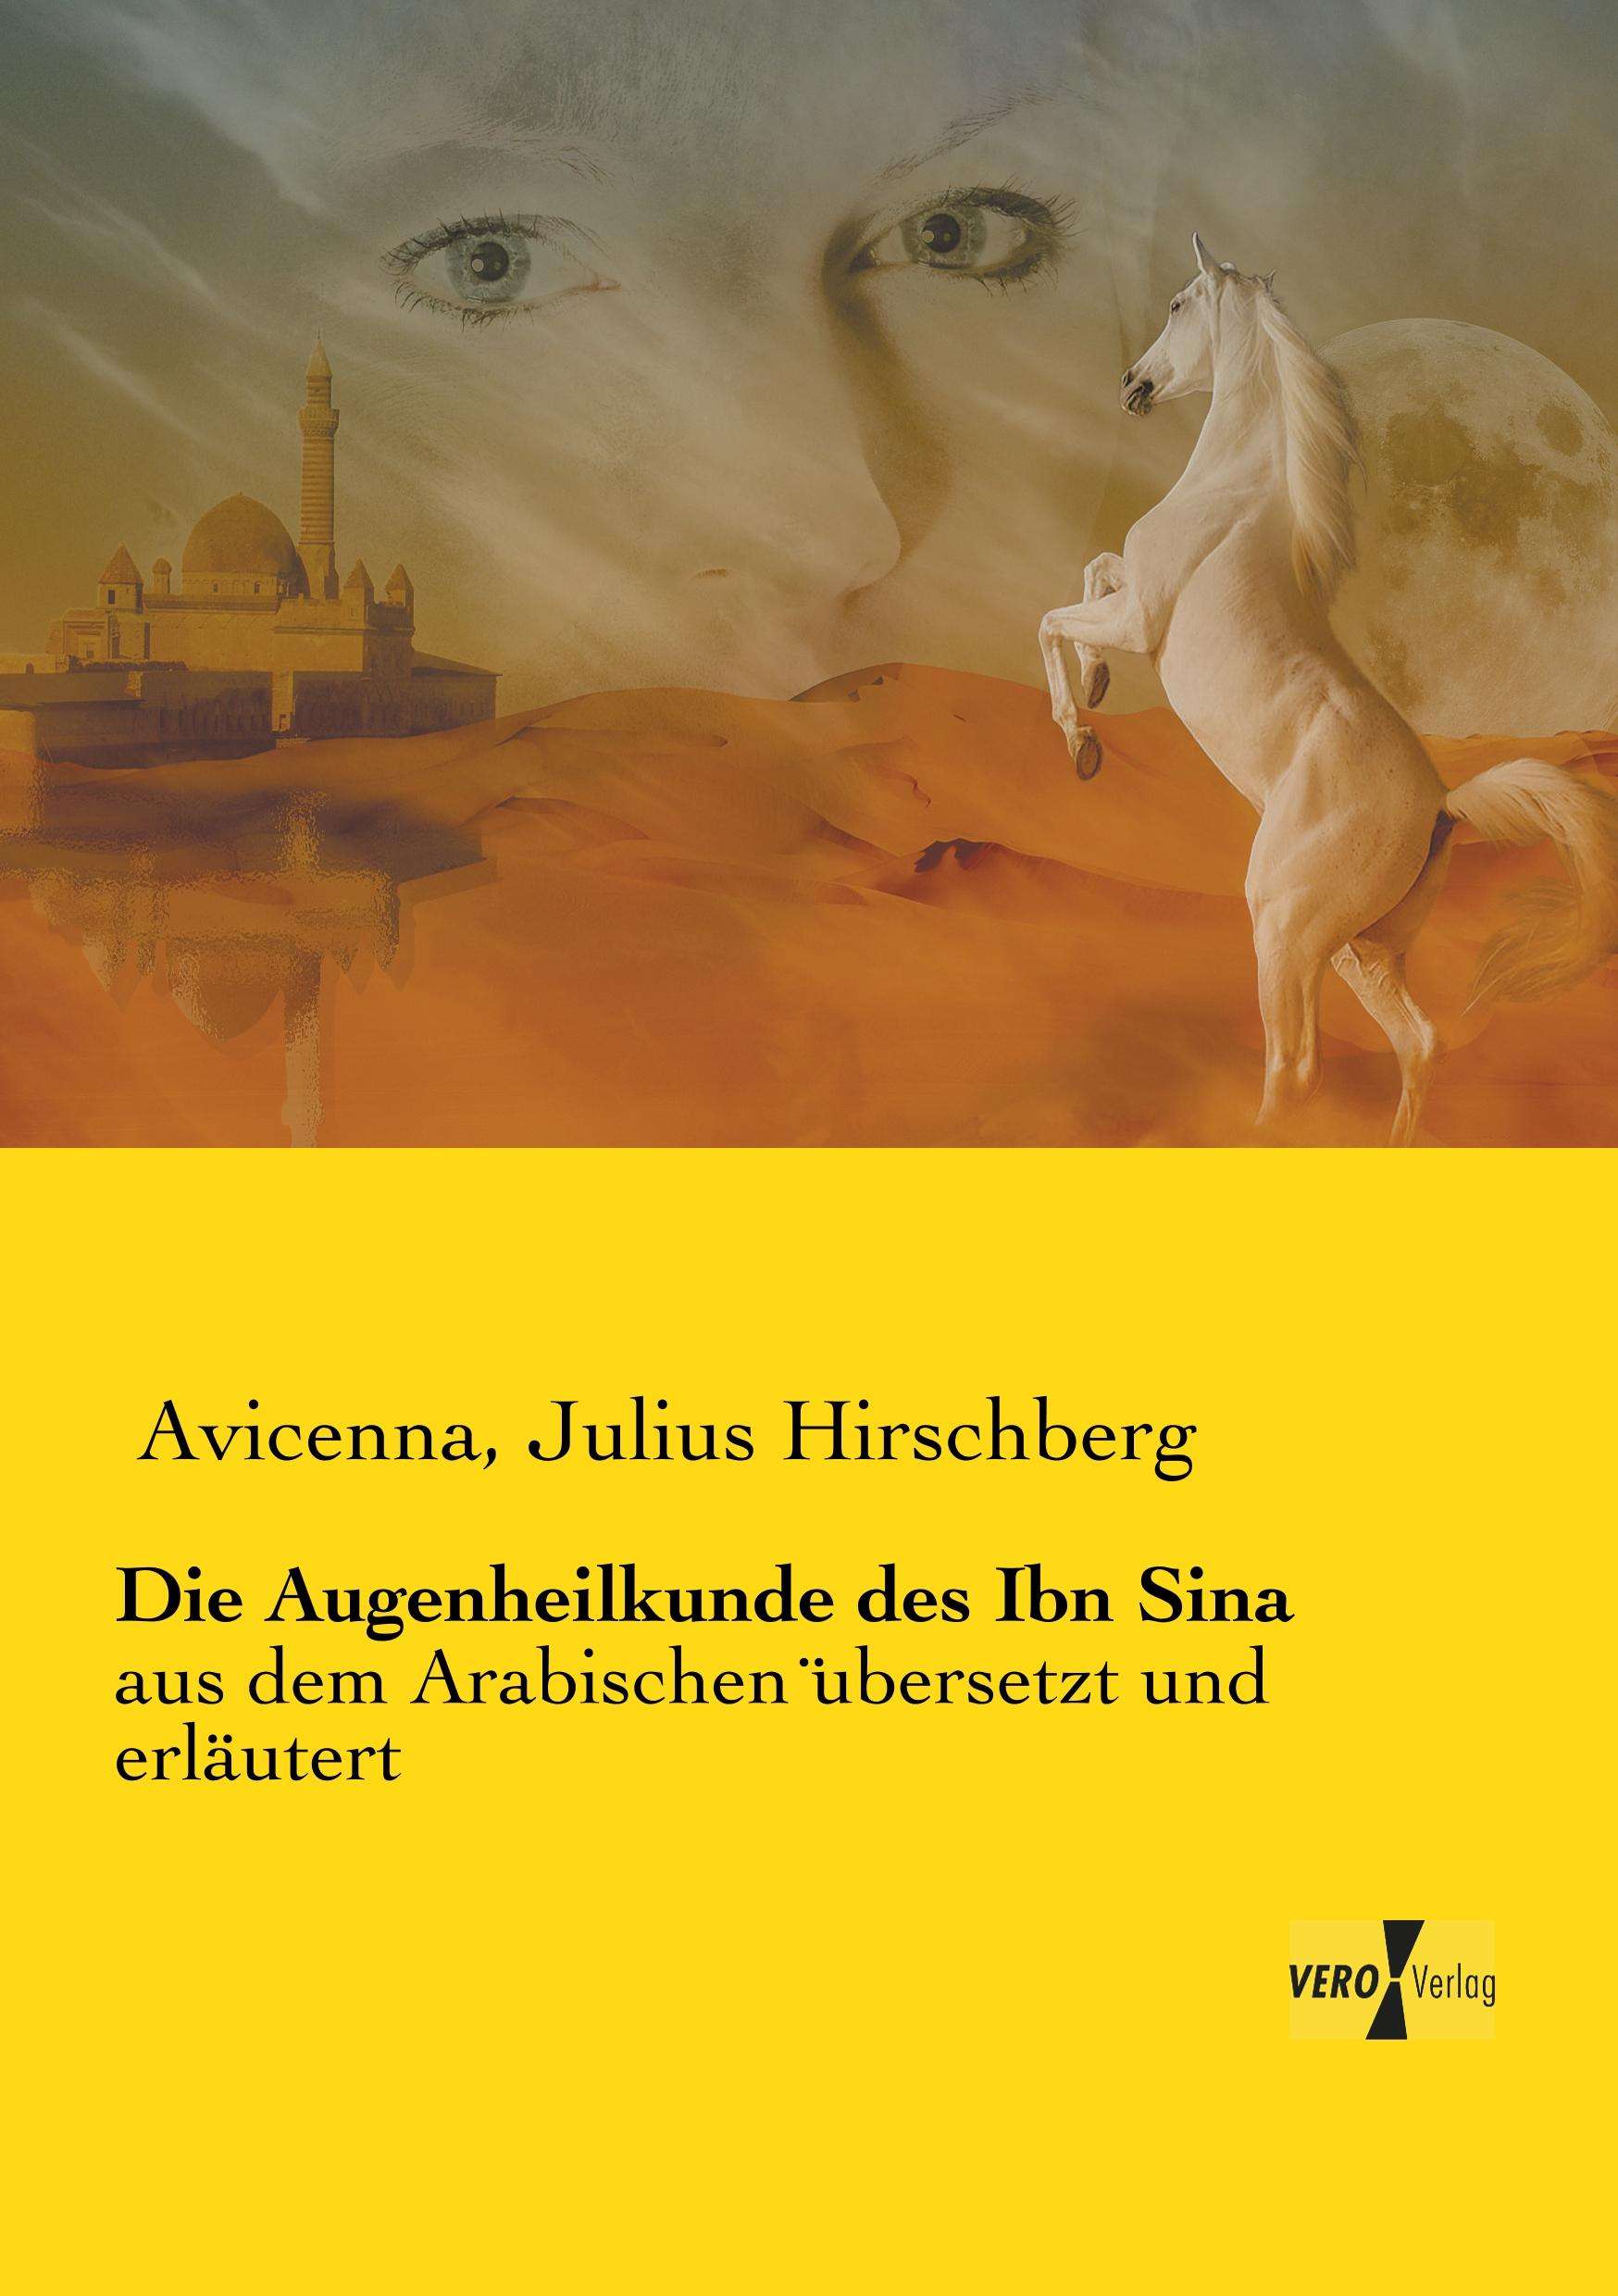 "Die Augenheilkunde Des Ibn Sina", von Hirschberg, Julius